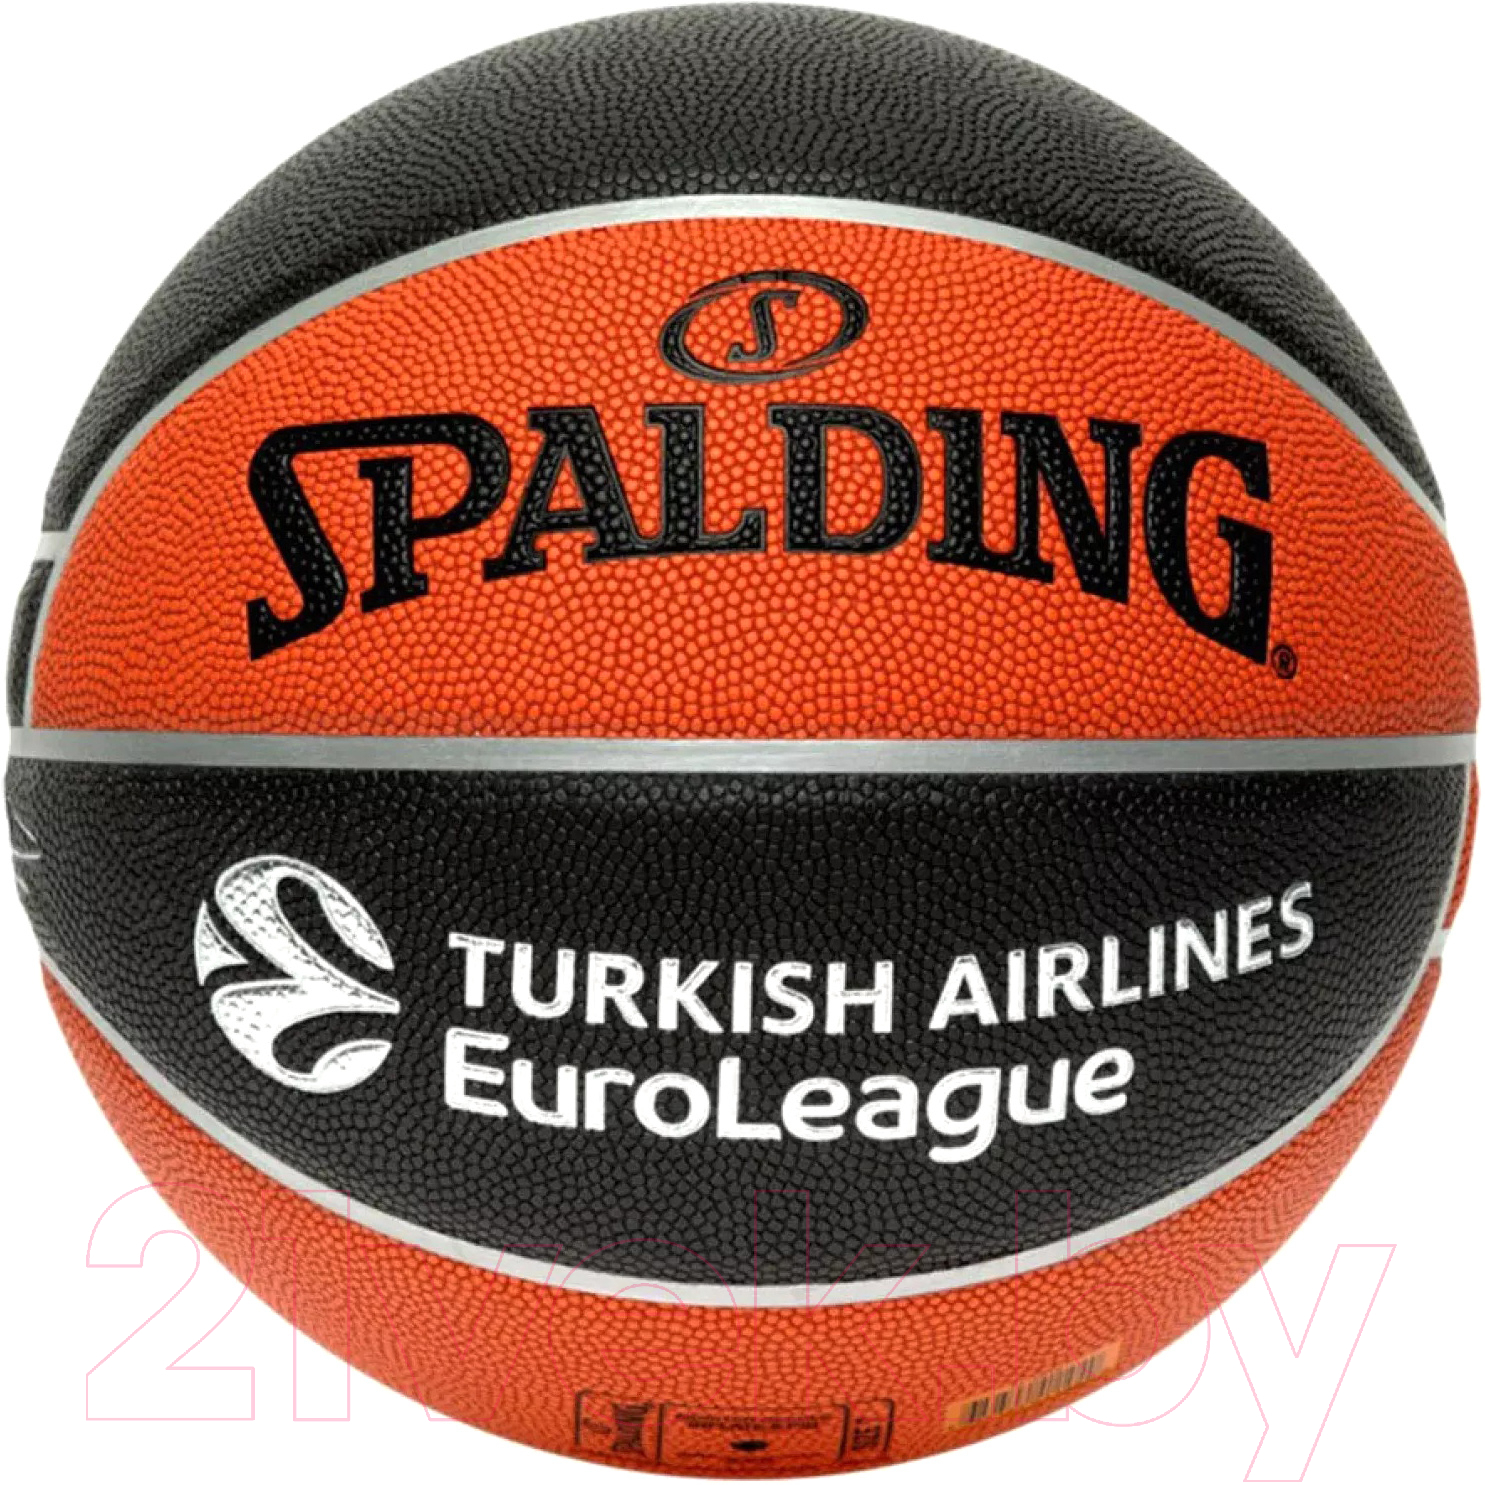 Баскетбольный мяч Spalding Excel Euroleague TF-500 / 77-101Z